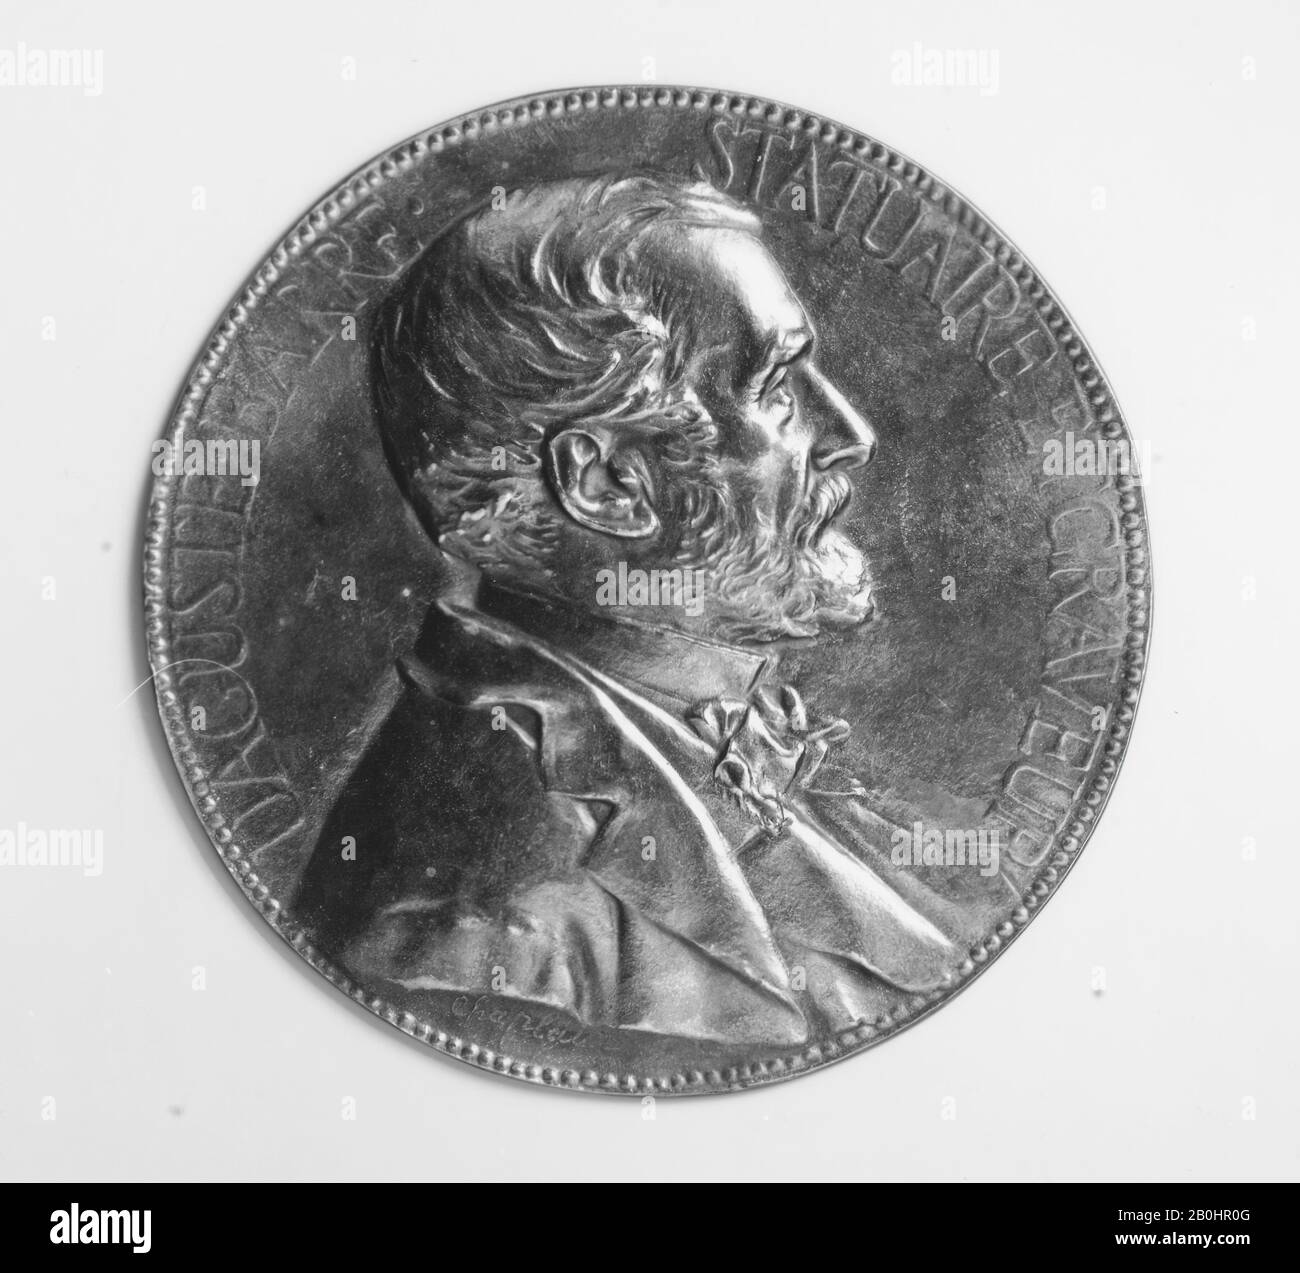 Pièces commémoratives - P. De Greef Medals